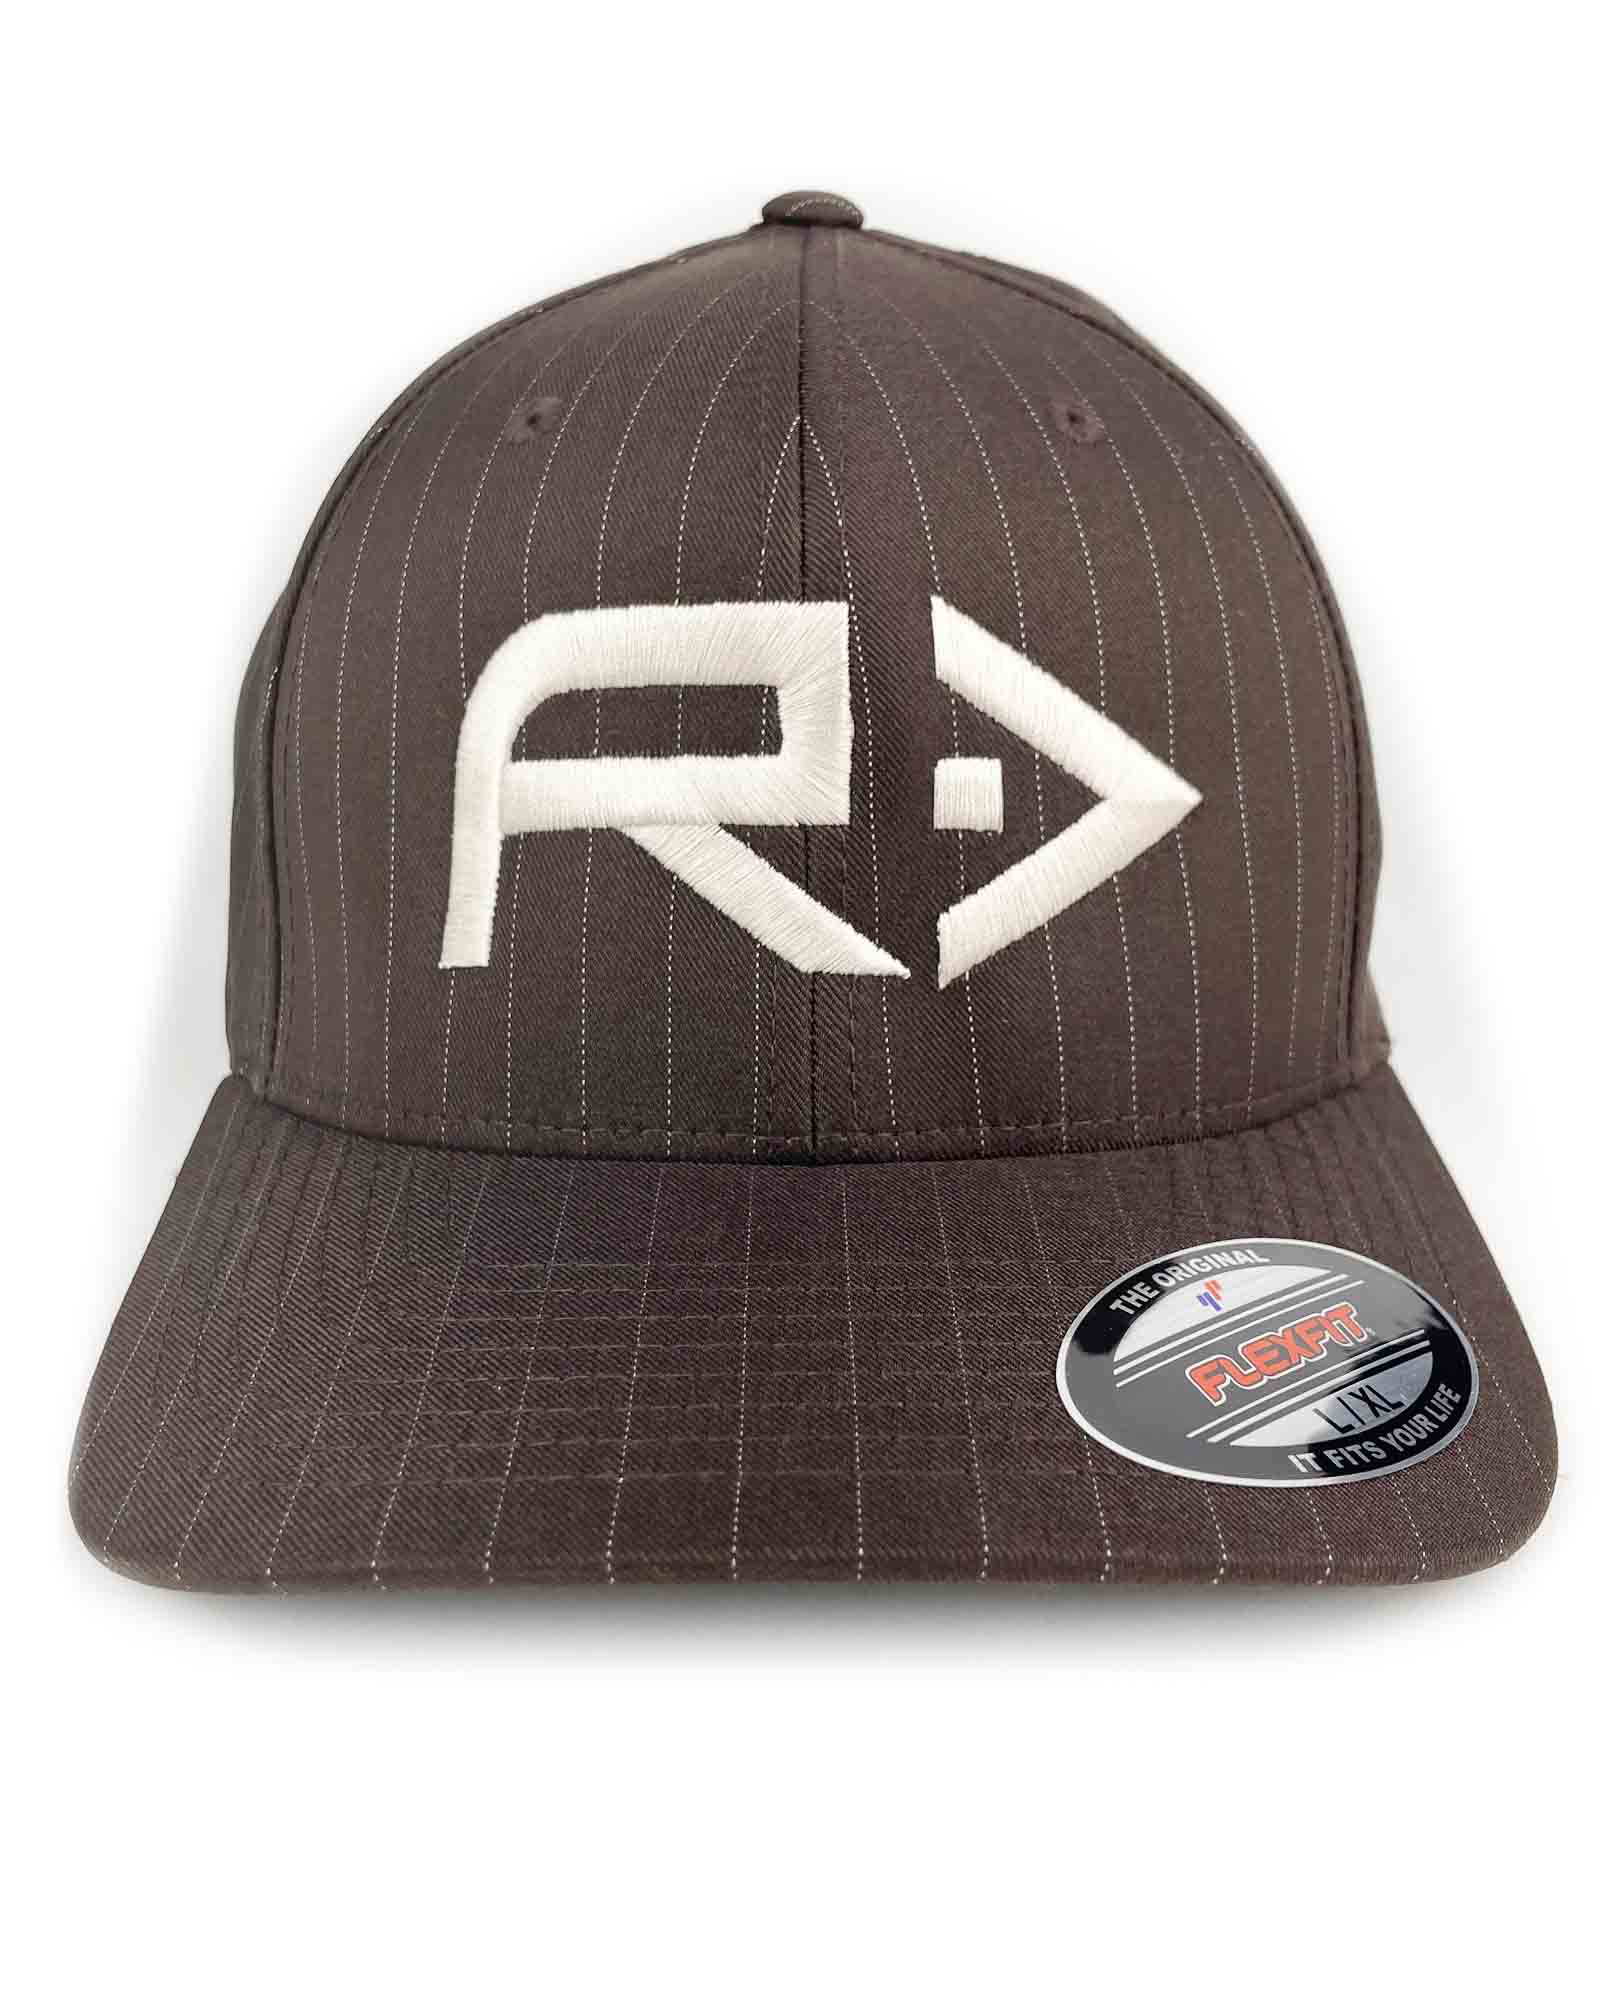 RAHFISH BIG R FULLBACK HAT